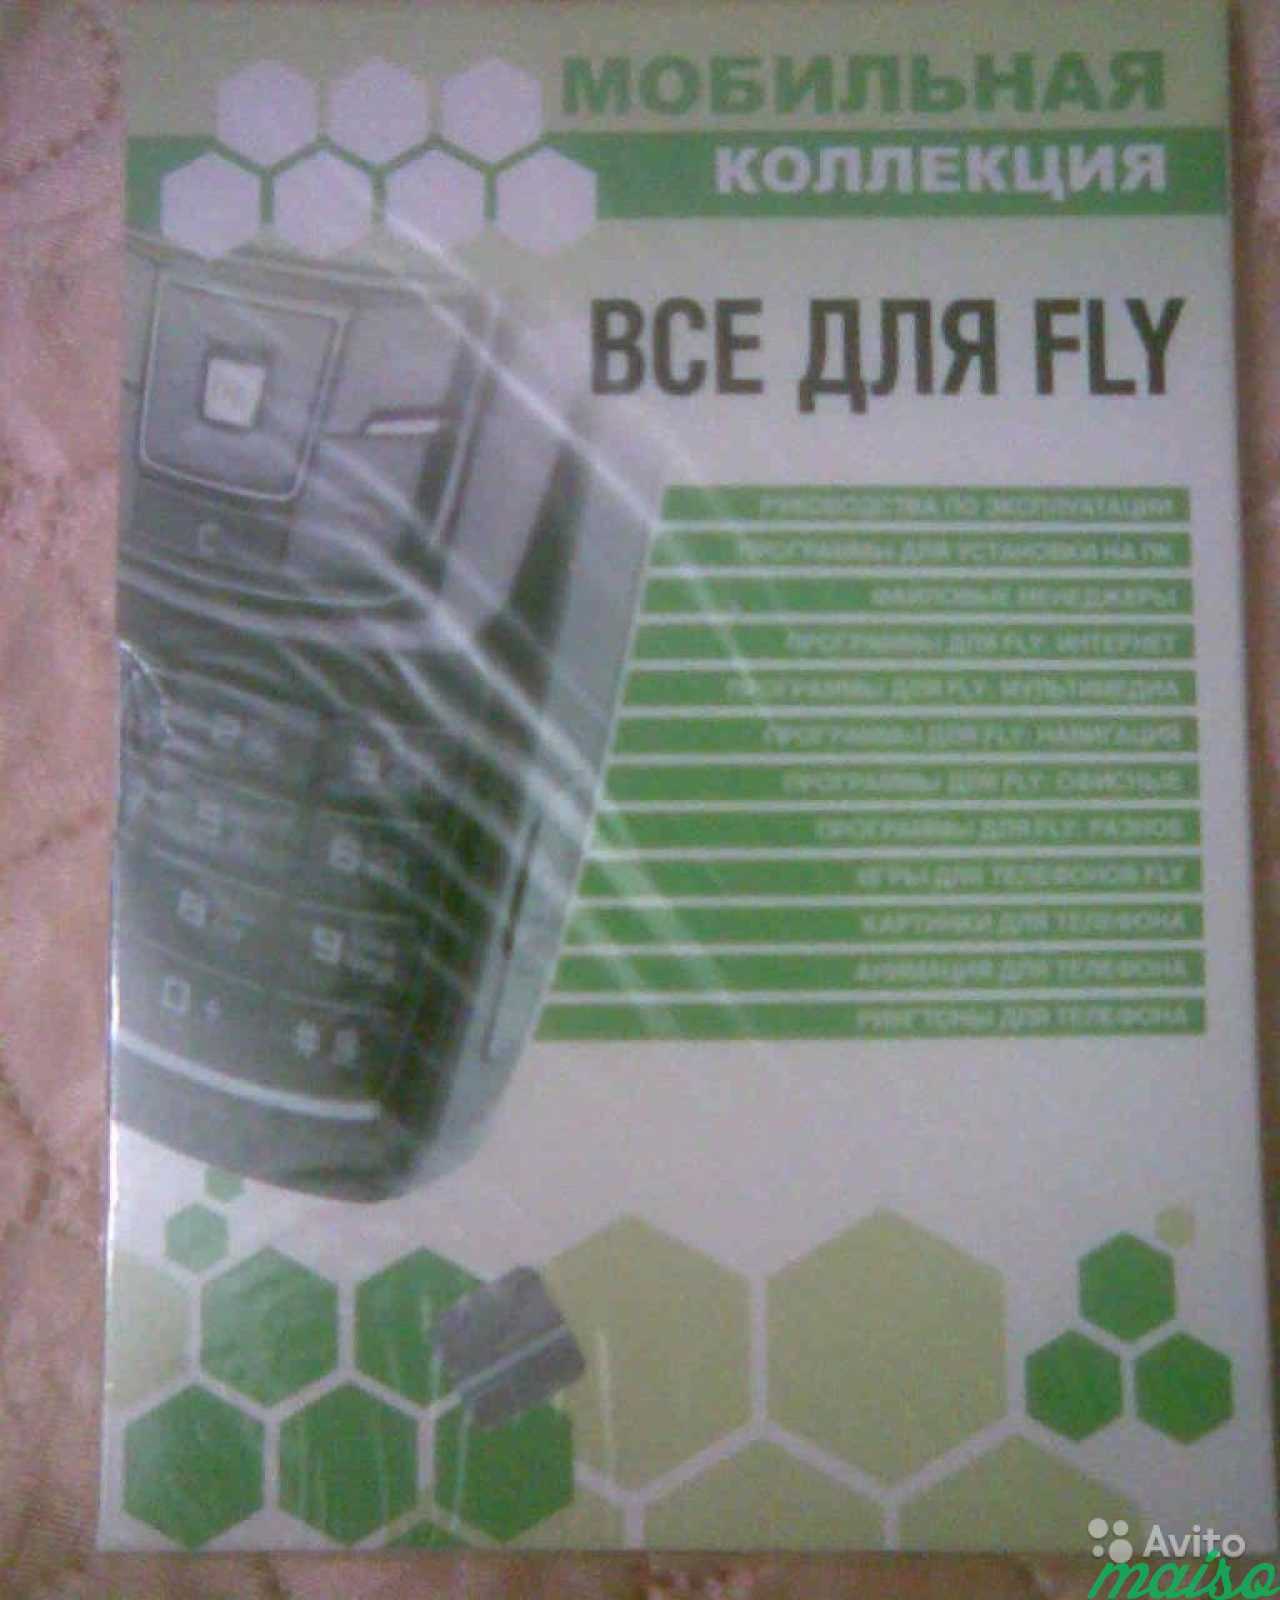 Прогрыммы для мобильных телефонов в Санкт-Петербурге. Фото 2